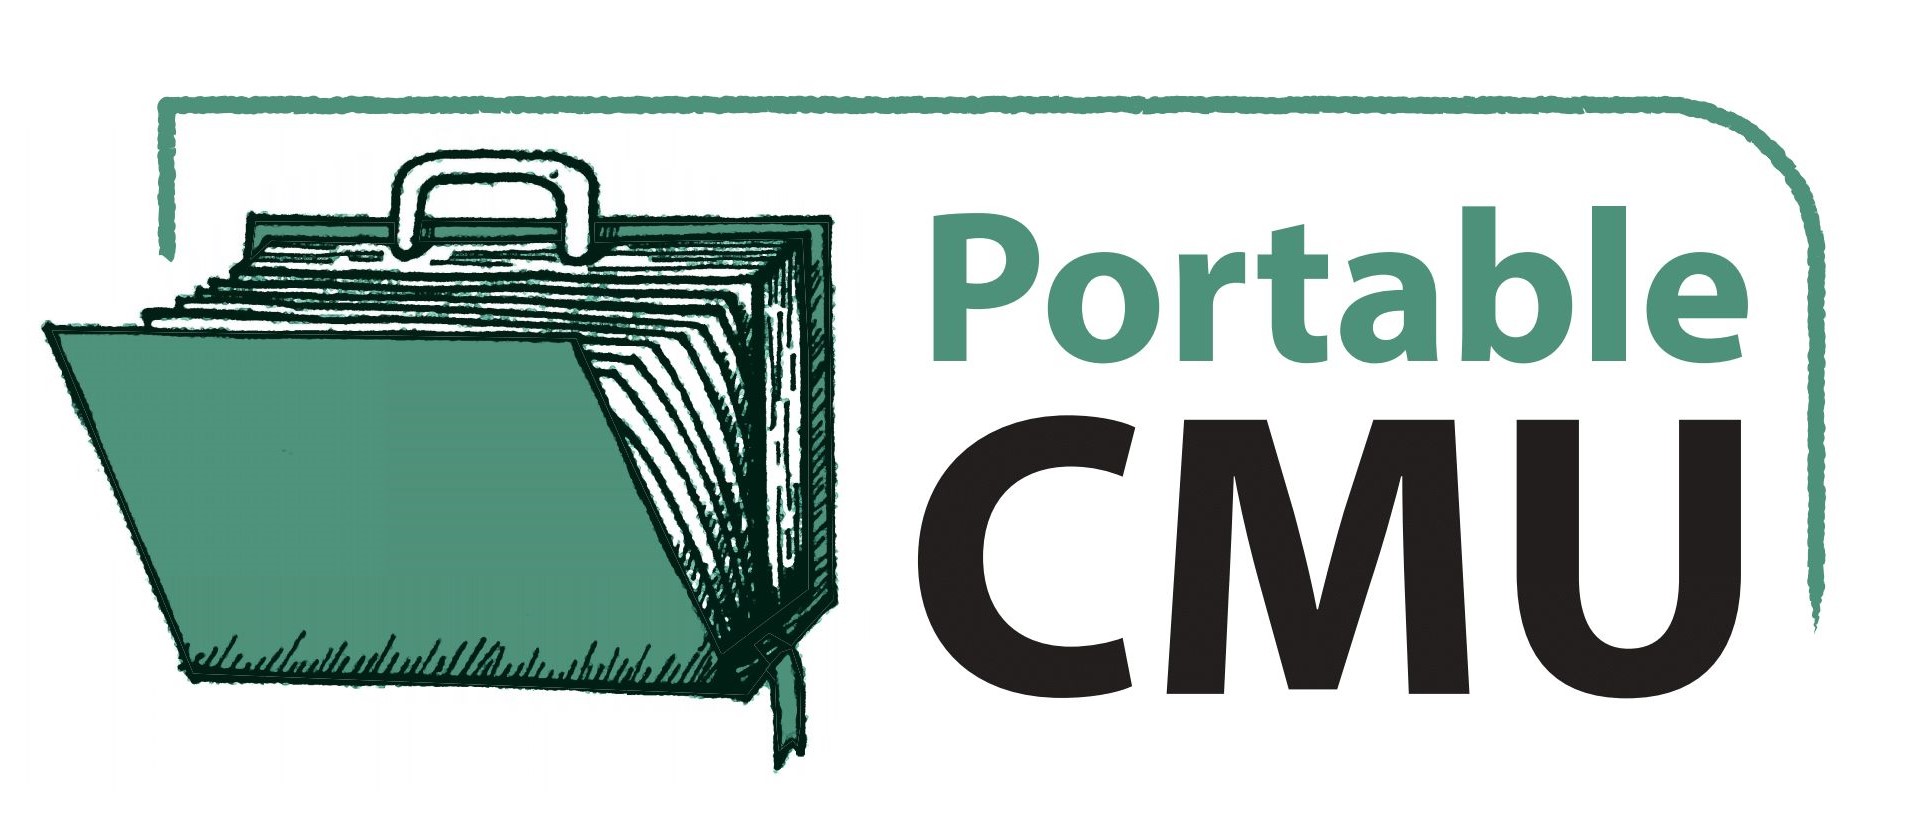 Portable CMU logo